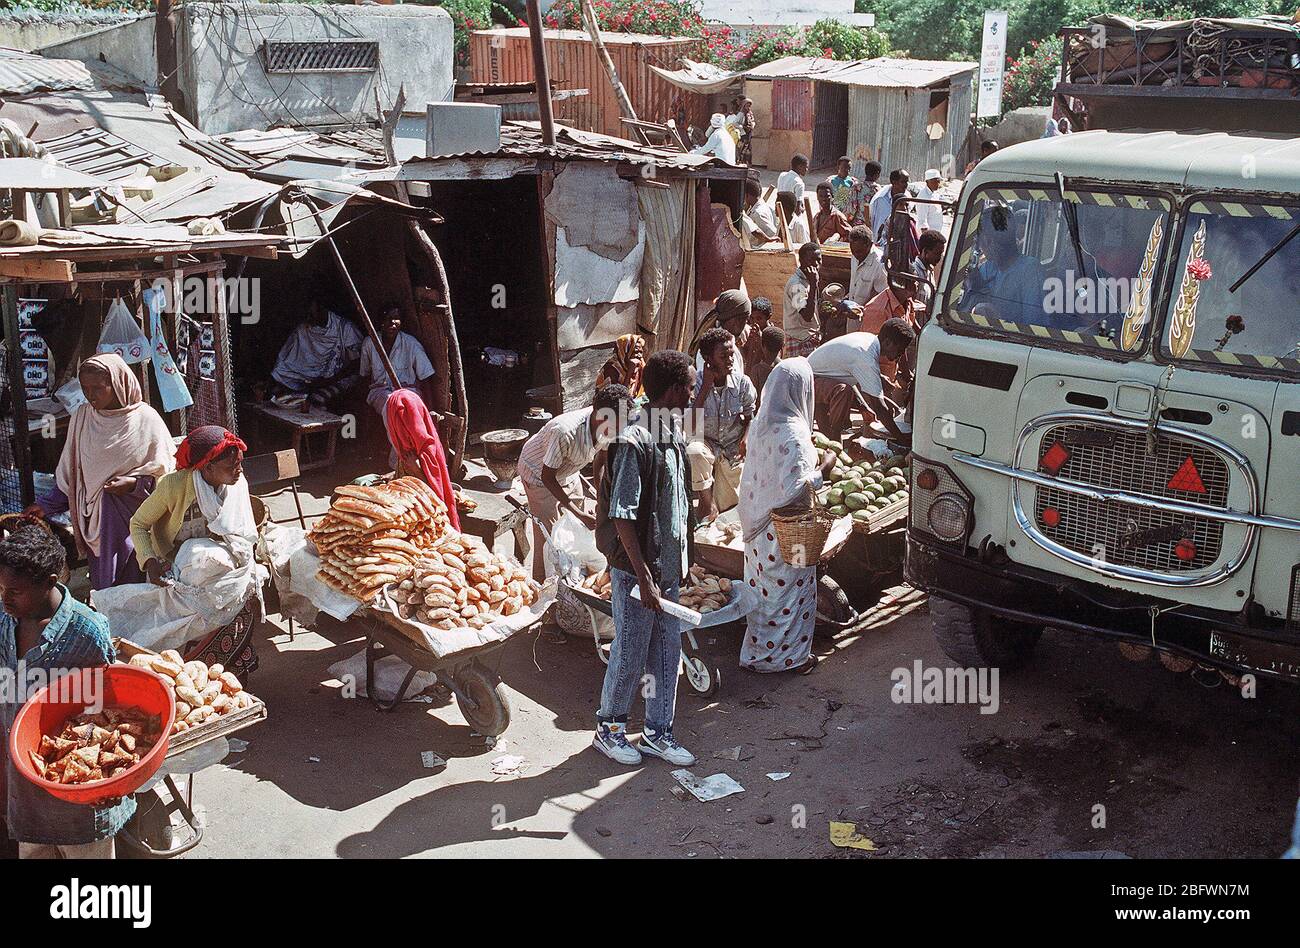 1992 - fornitori di somali velo la loro mercanzia su una strada trafficata durante la multinazionale soccorsi Restore Hope. Mogadiscio (Somalia) Foto Stock